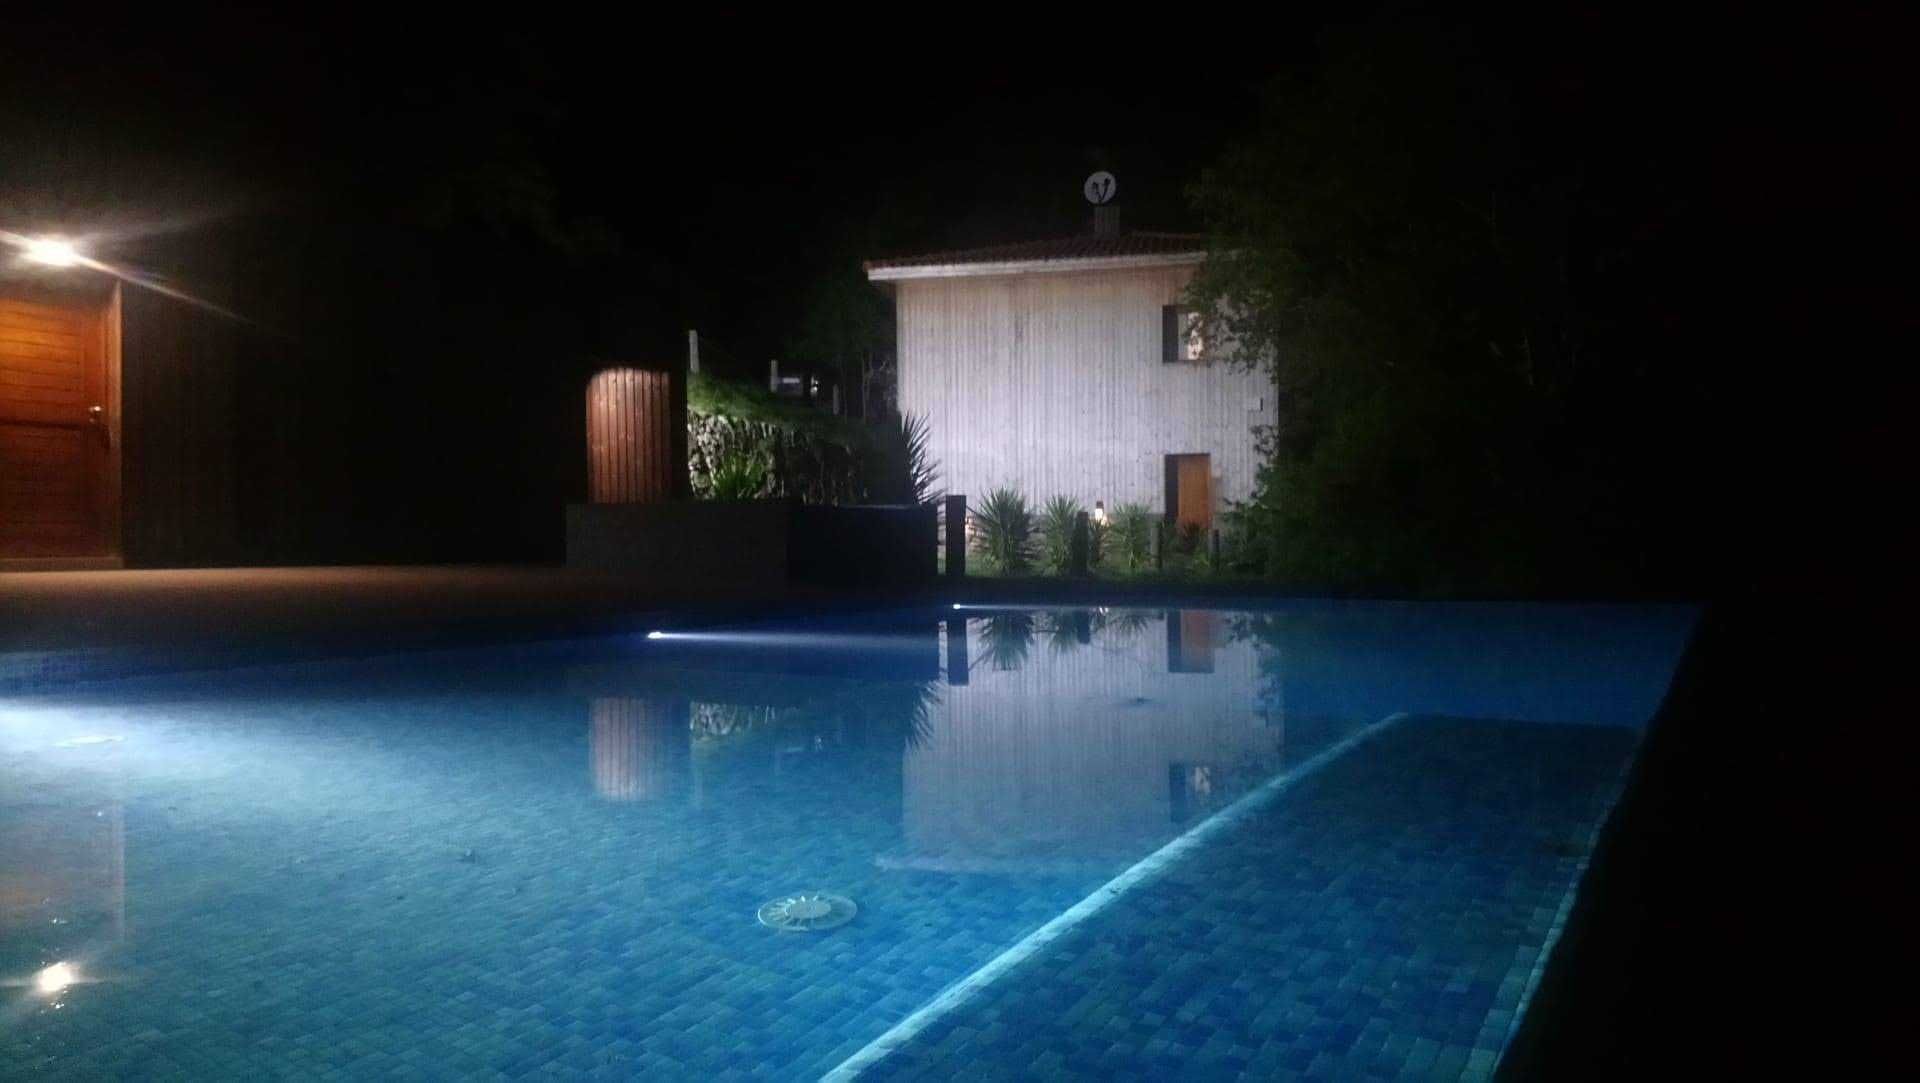 Casa de férias no Gerês com piscina, jacuzzi, sauna, parque infantil..